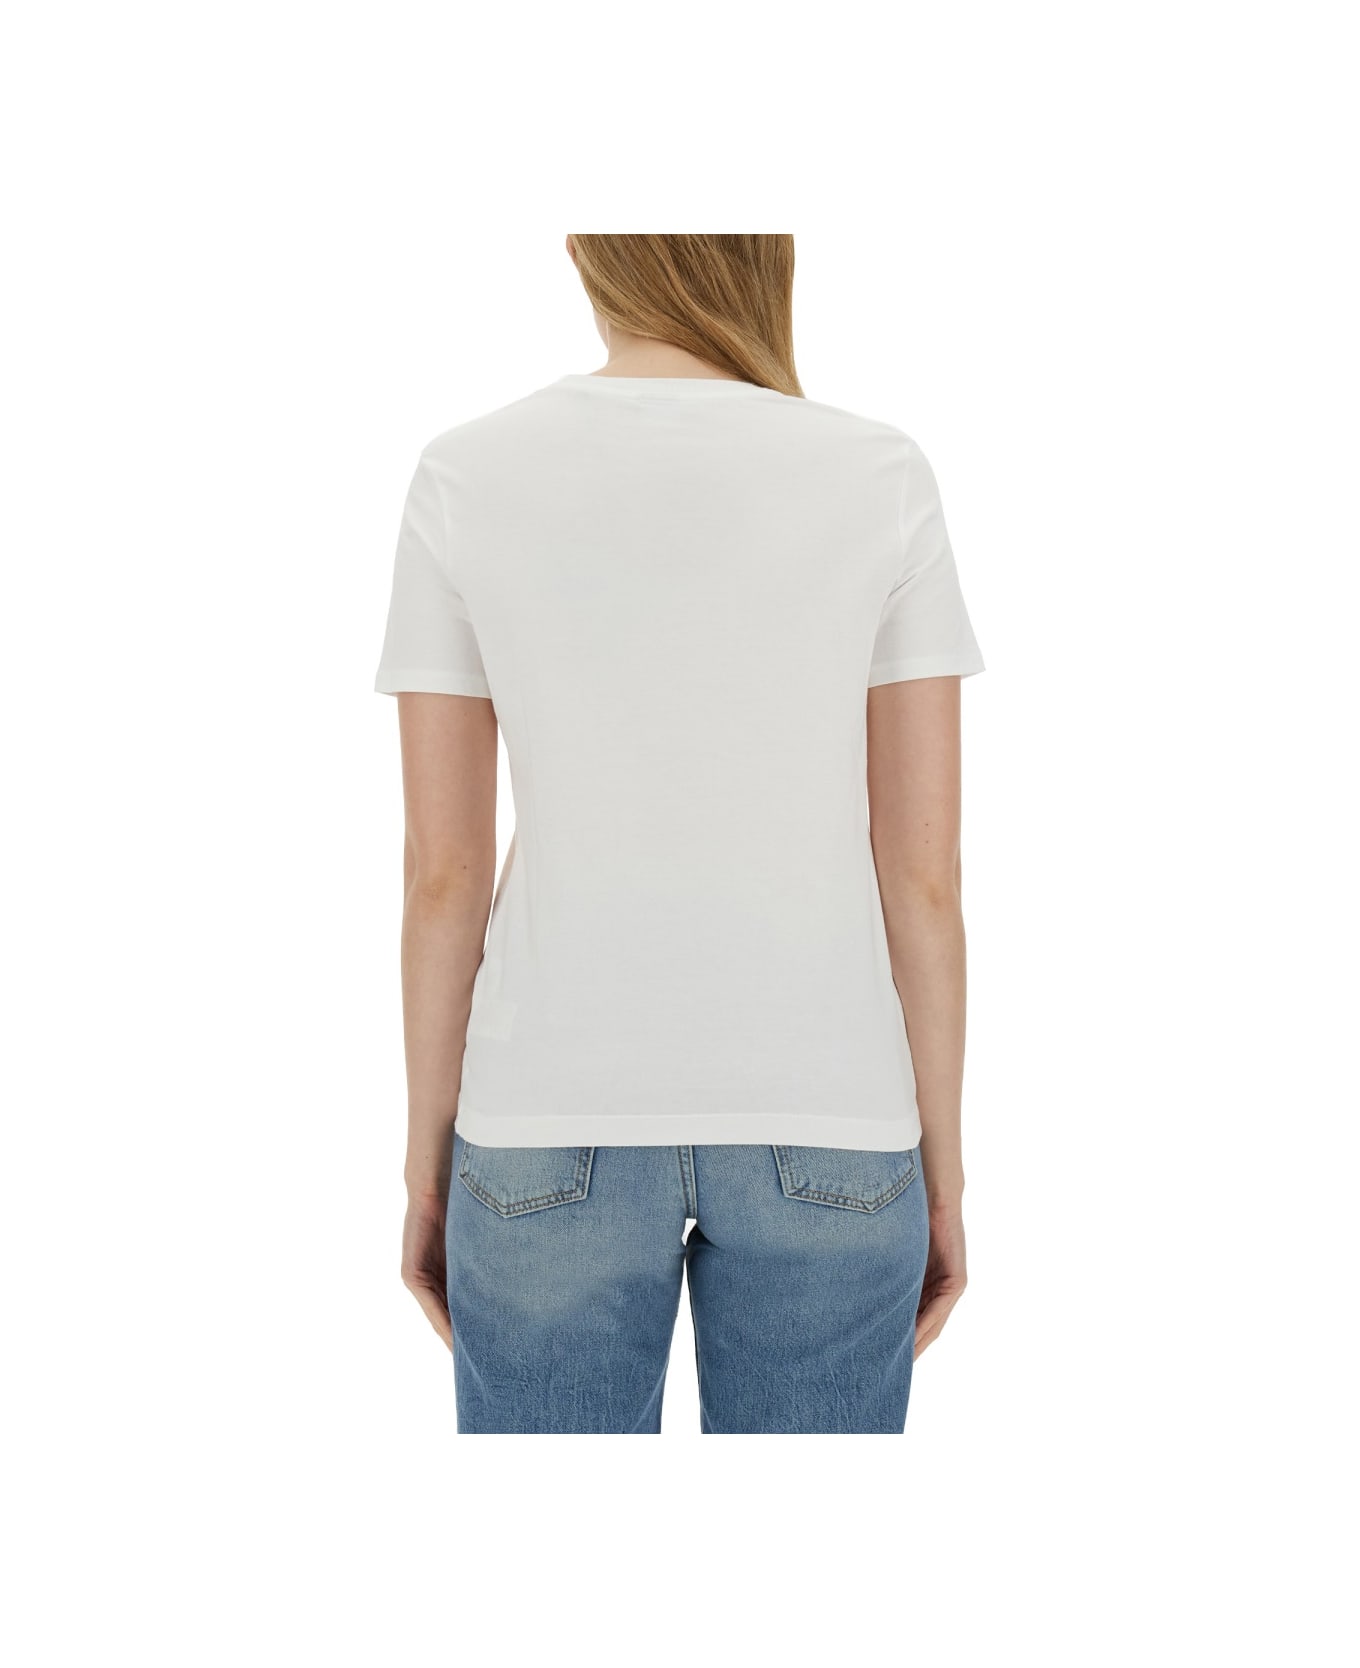 Paul Smith Daisy T-shirt - White